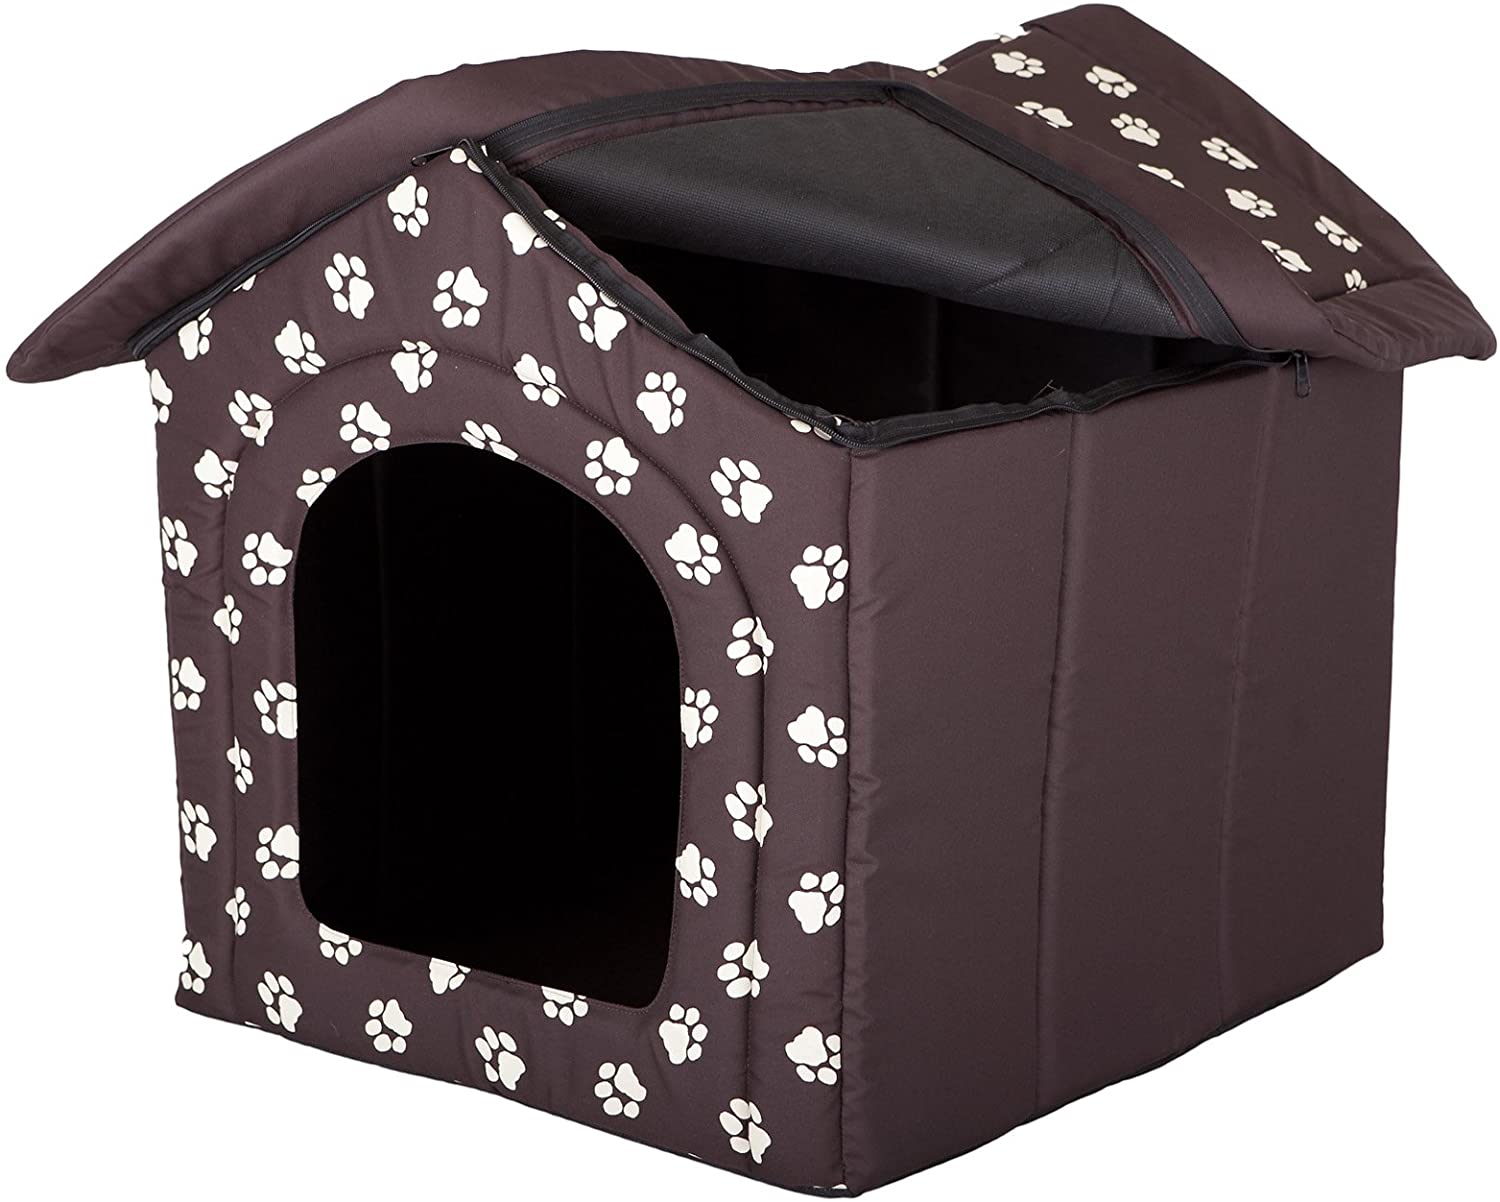  Hobbydog - Casa para Perro, tamaño 4, Color marrón con Patas 